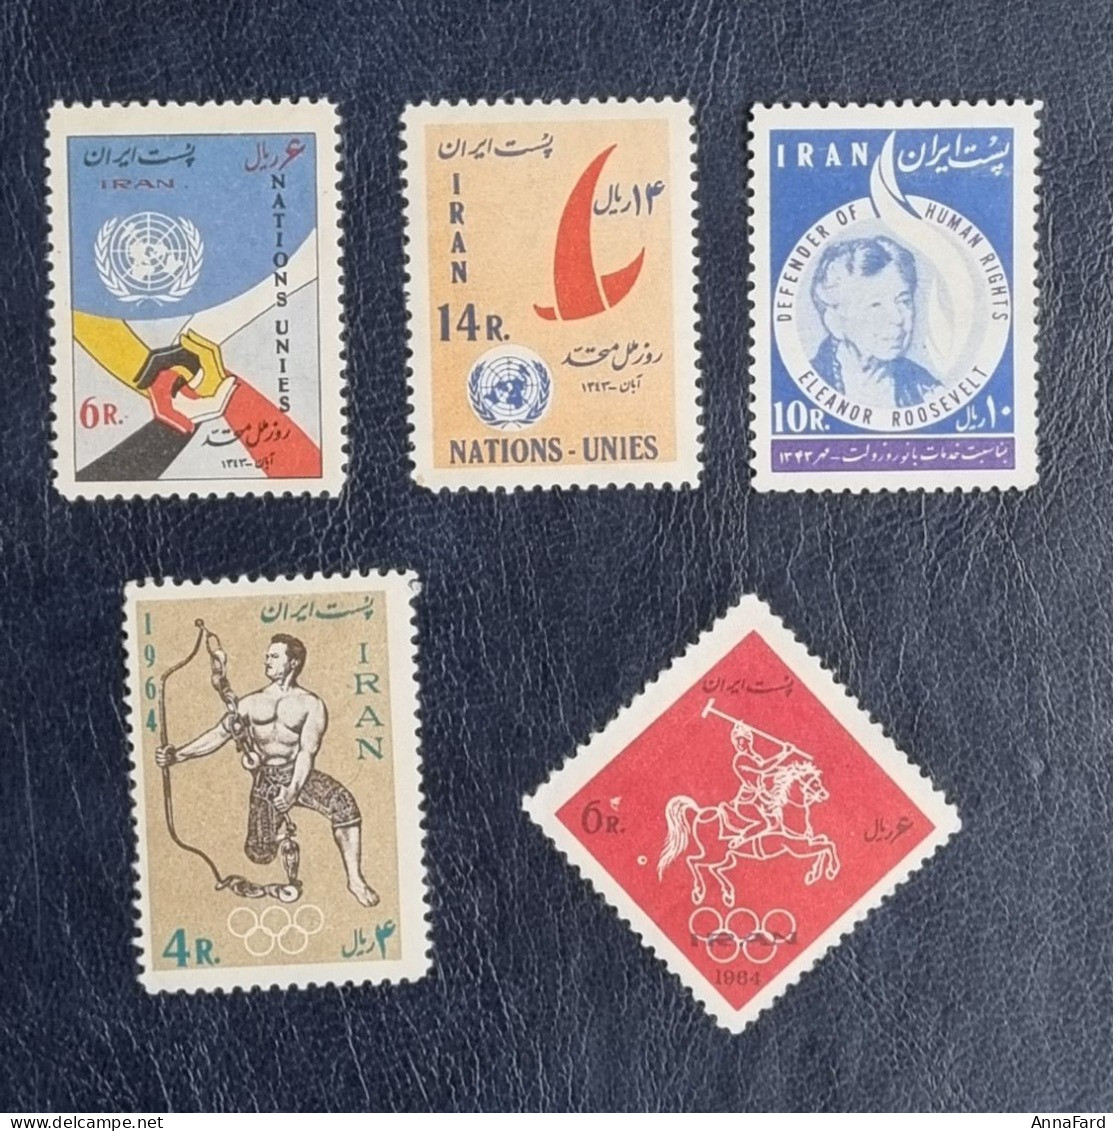 1964 Iran Persia. 3 Different Sets MNH Scott 1300-1304 - Iran